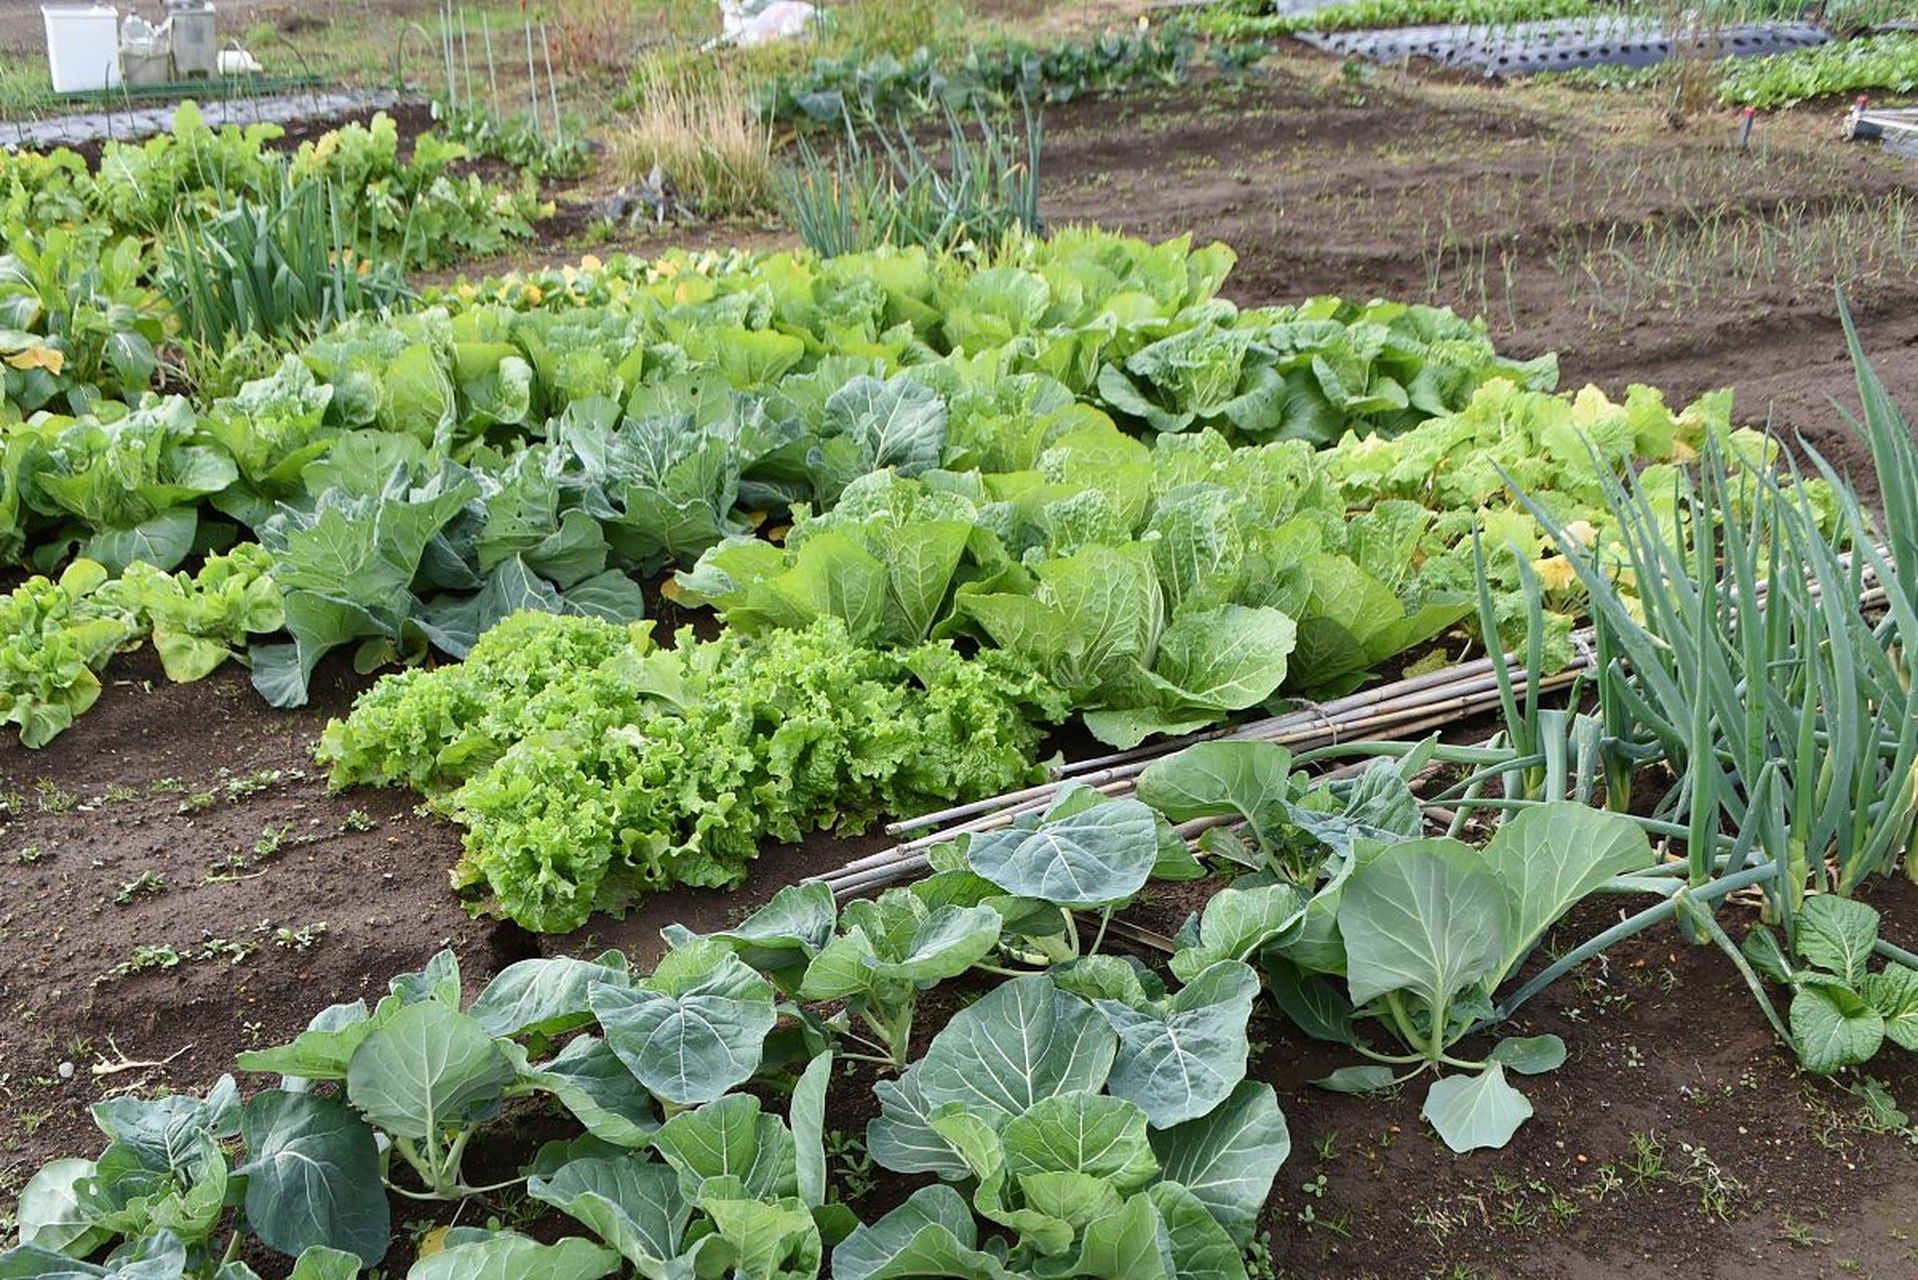 摘要: 四季小白菜是一种耐寒蔬菜,种植养护技巧包括选择合适品种,适宜